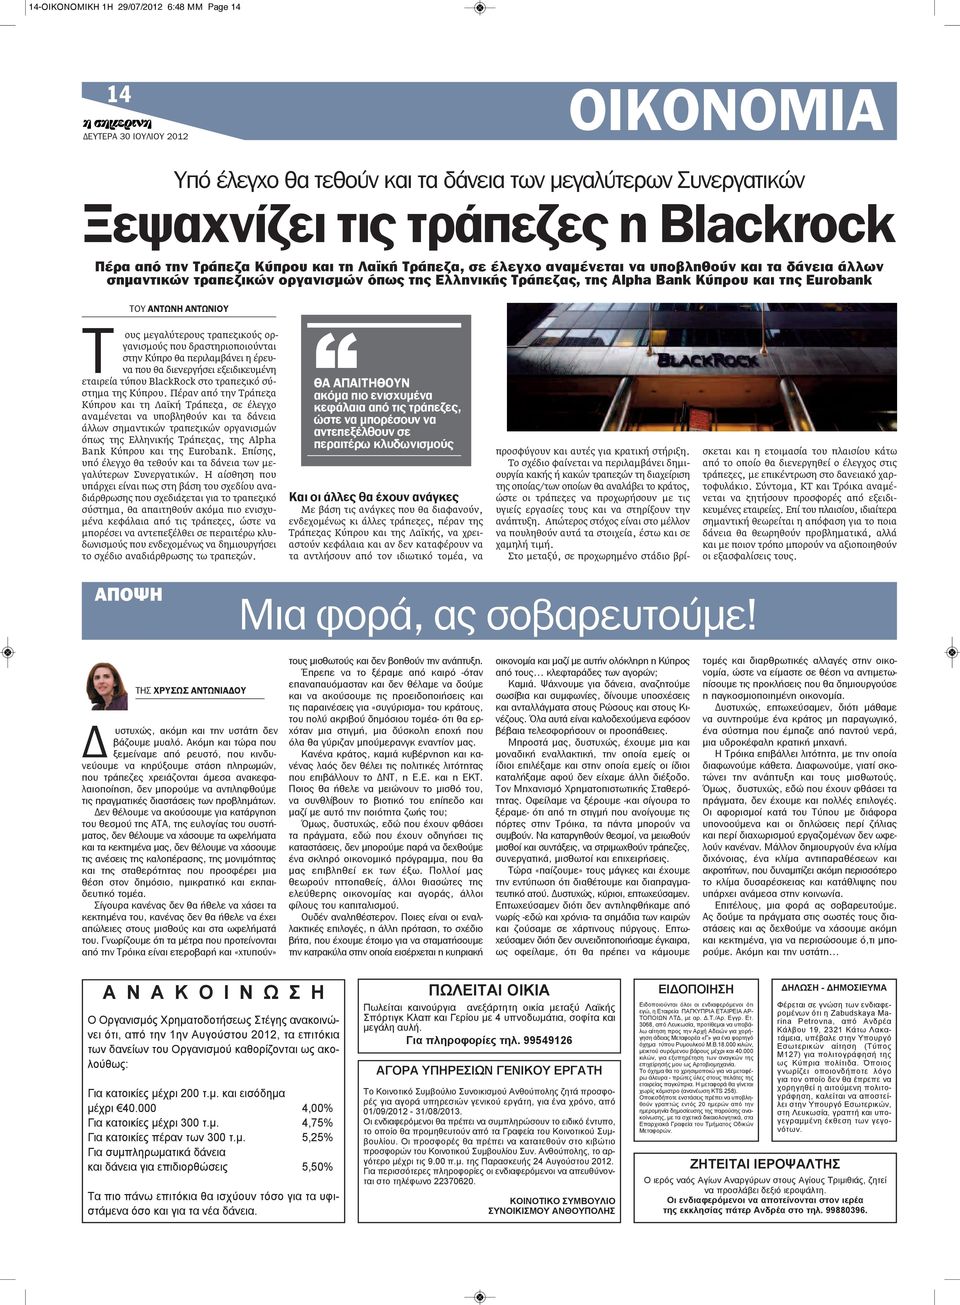 μεγαλύτερους τραπεζικούς οργανισμούς που δραστηριοποιούνται στην Κύπρο θα περιλαμβάνει η έρευνα που θα διενεργήσει εξειδικευμένη εταιρεία τύπου BlackRock στο τραπεζικό σύστημα της Κύπρου.